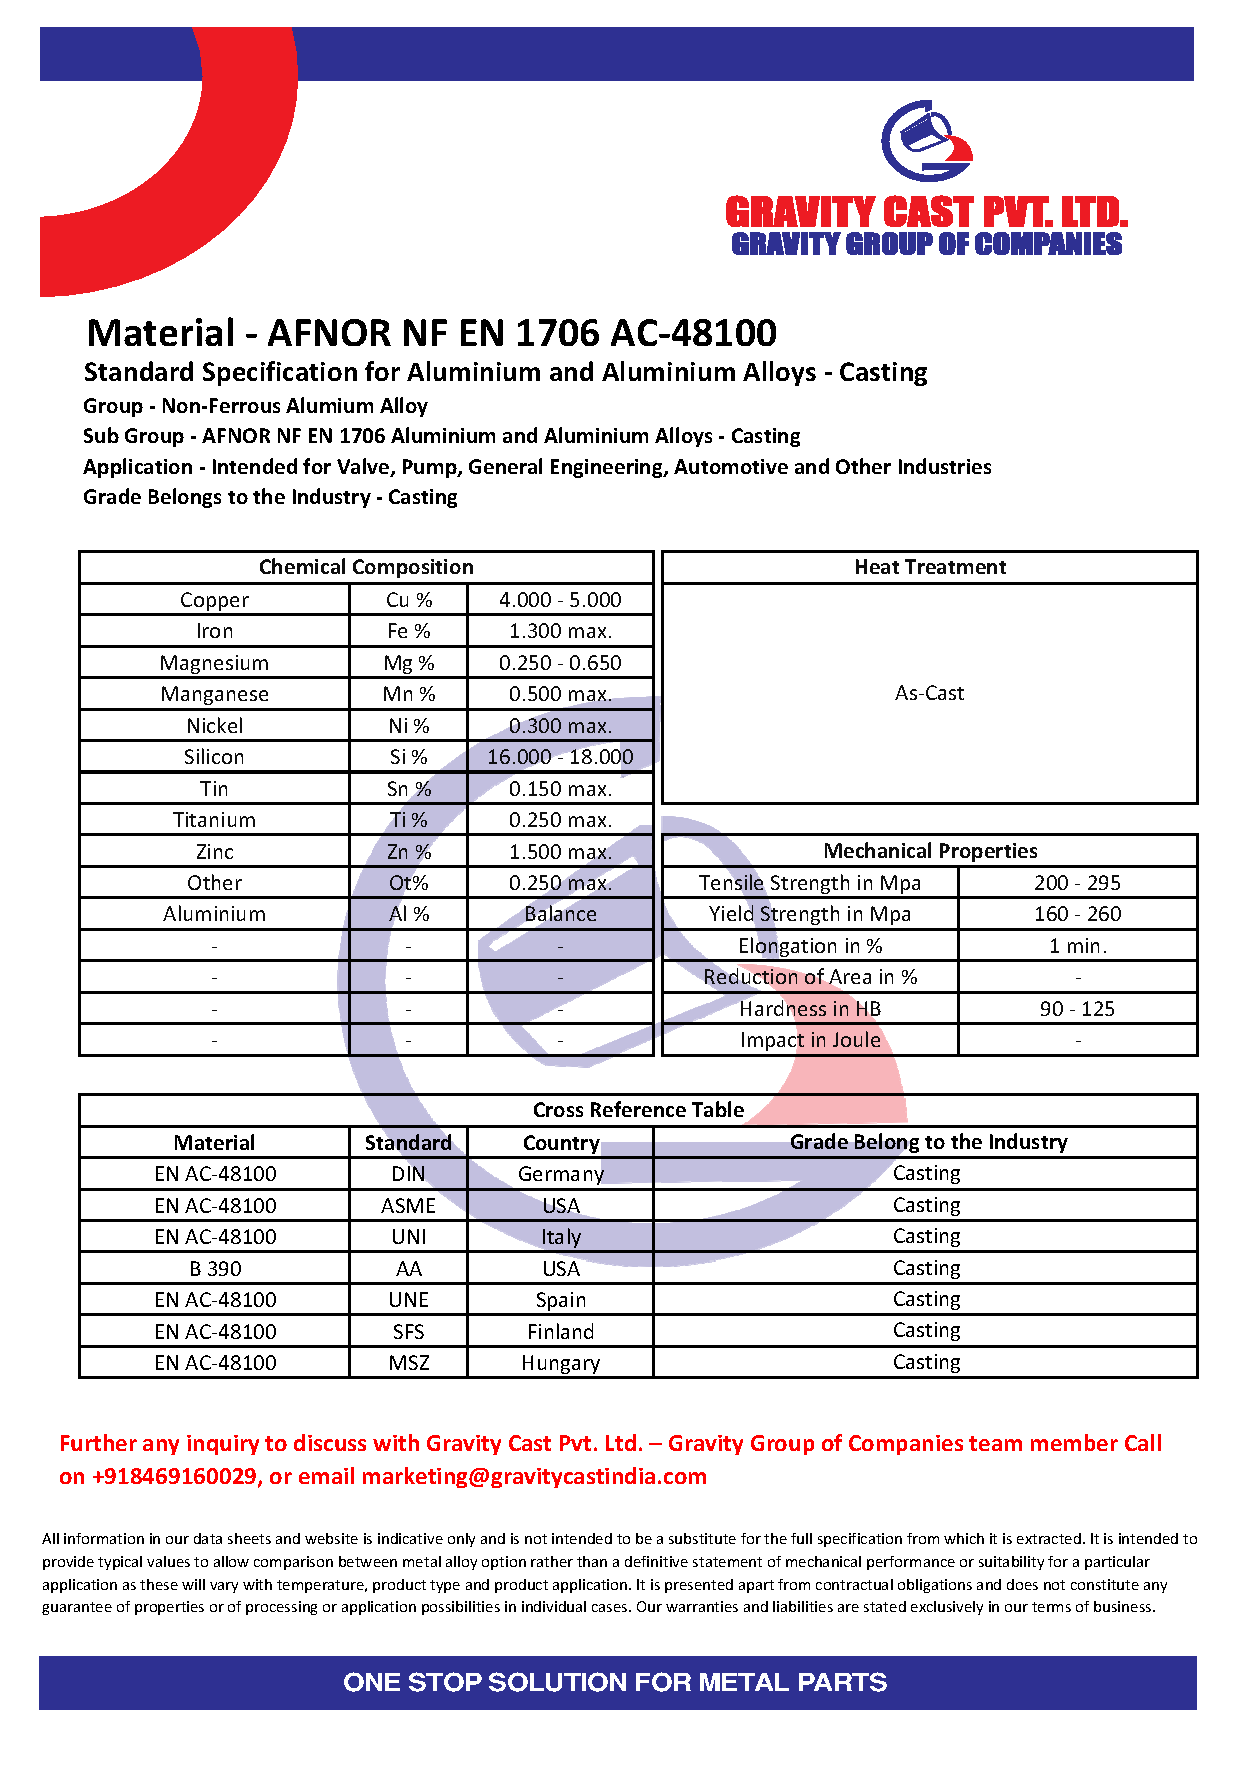 AFNOR NF EN 1706 AC-48100.pdf